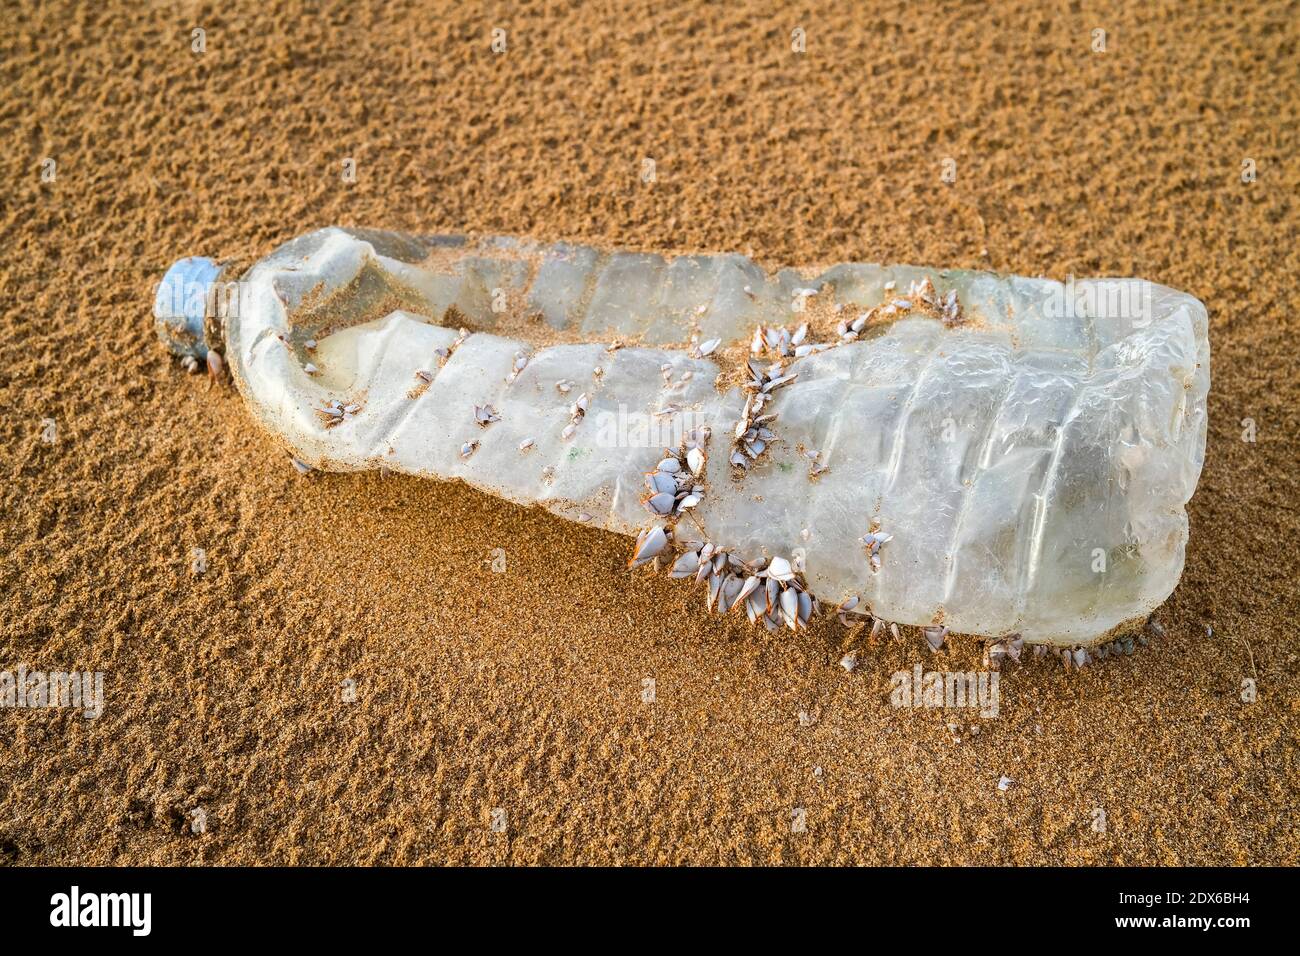 Bouteille en plastique avec des barnacles sur la plage, pollution plastique Banque D'Images